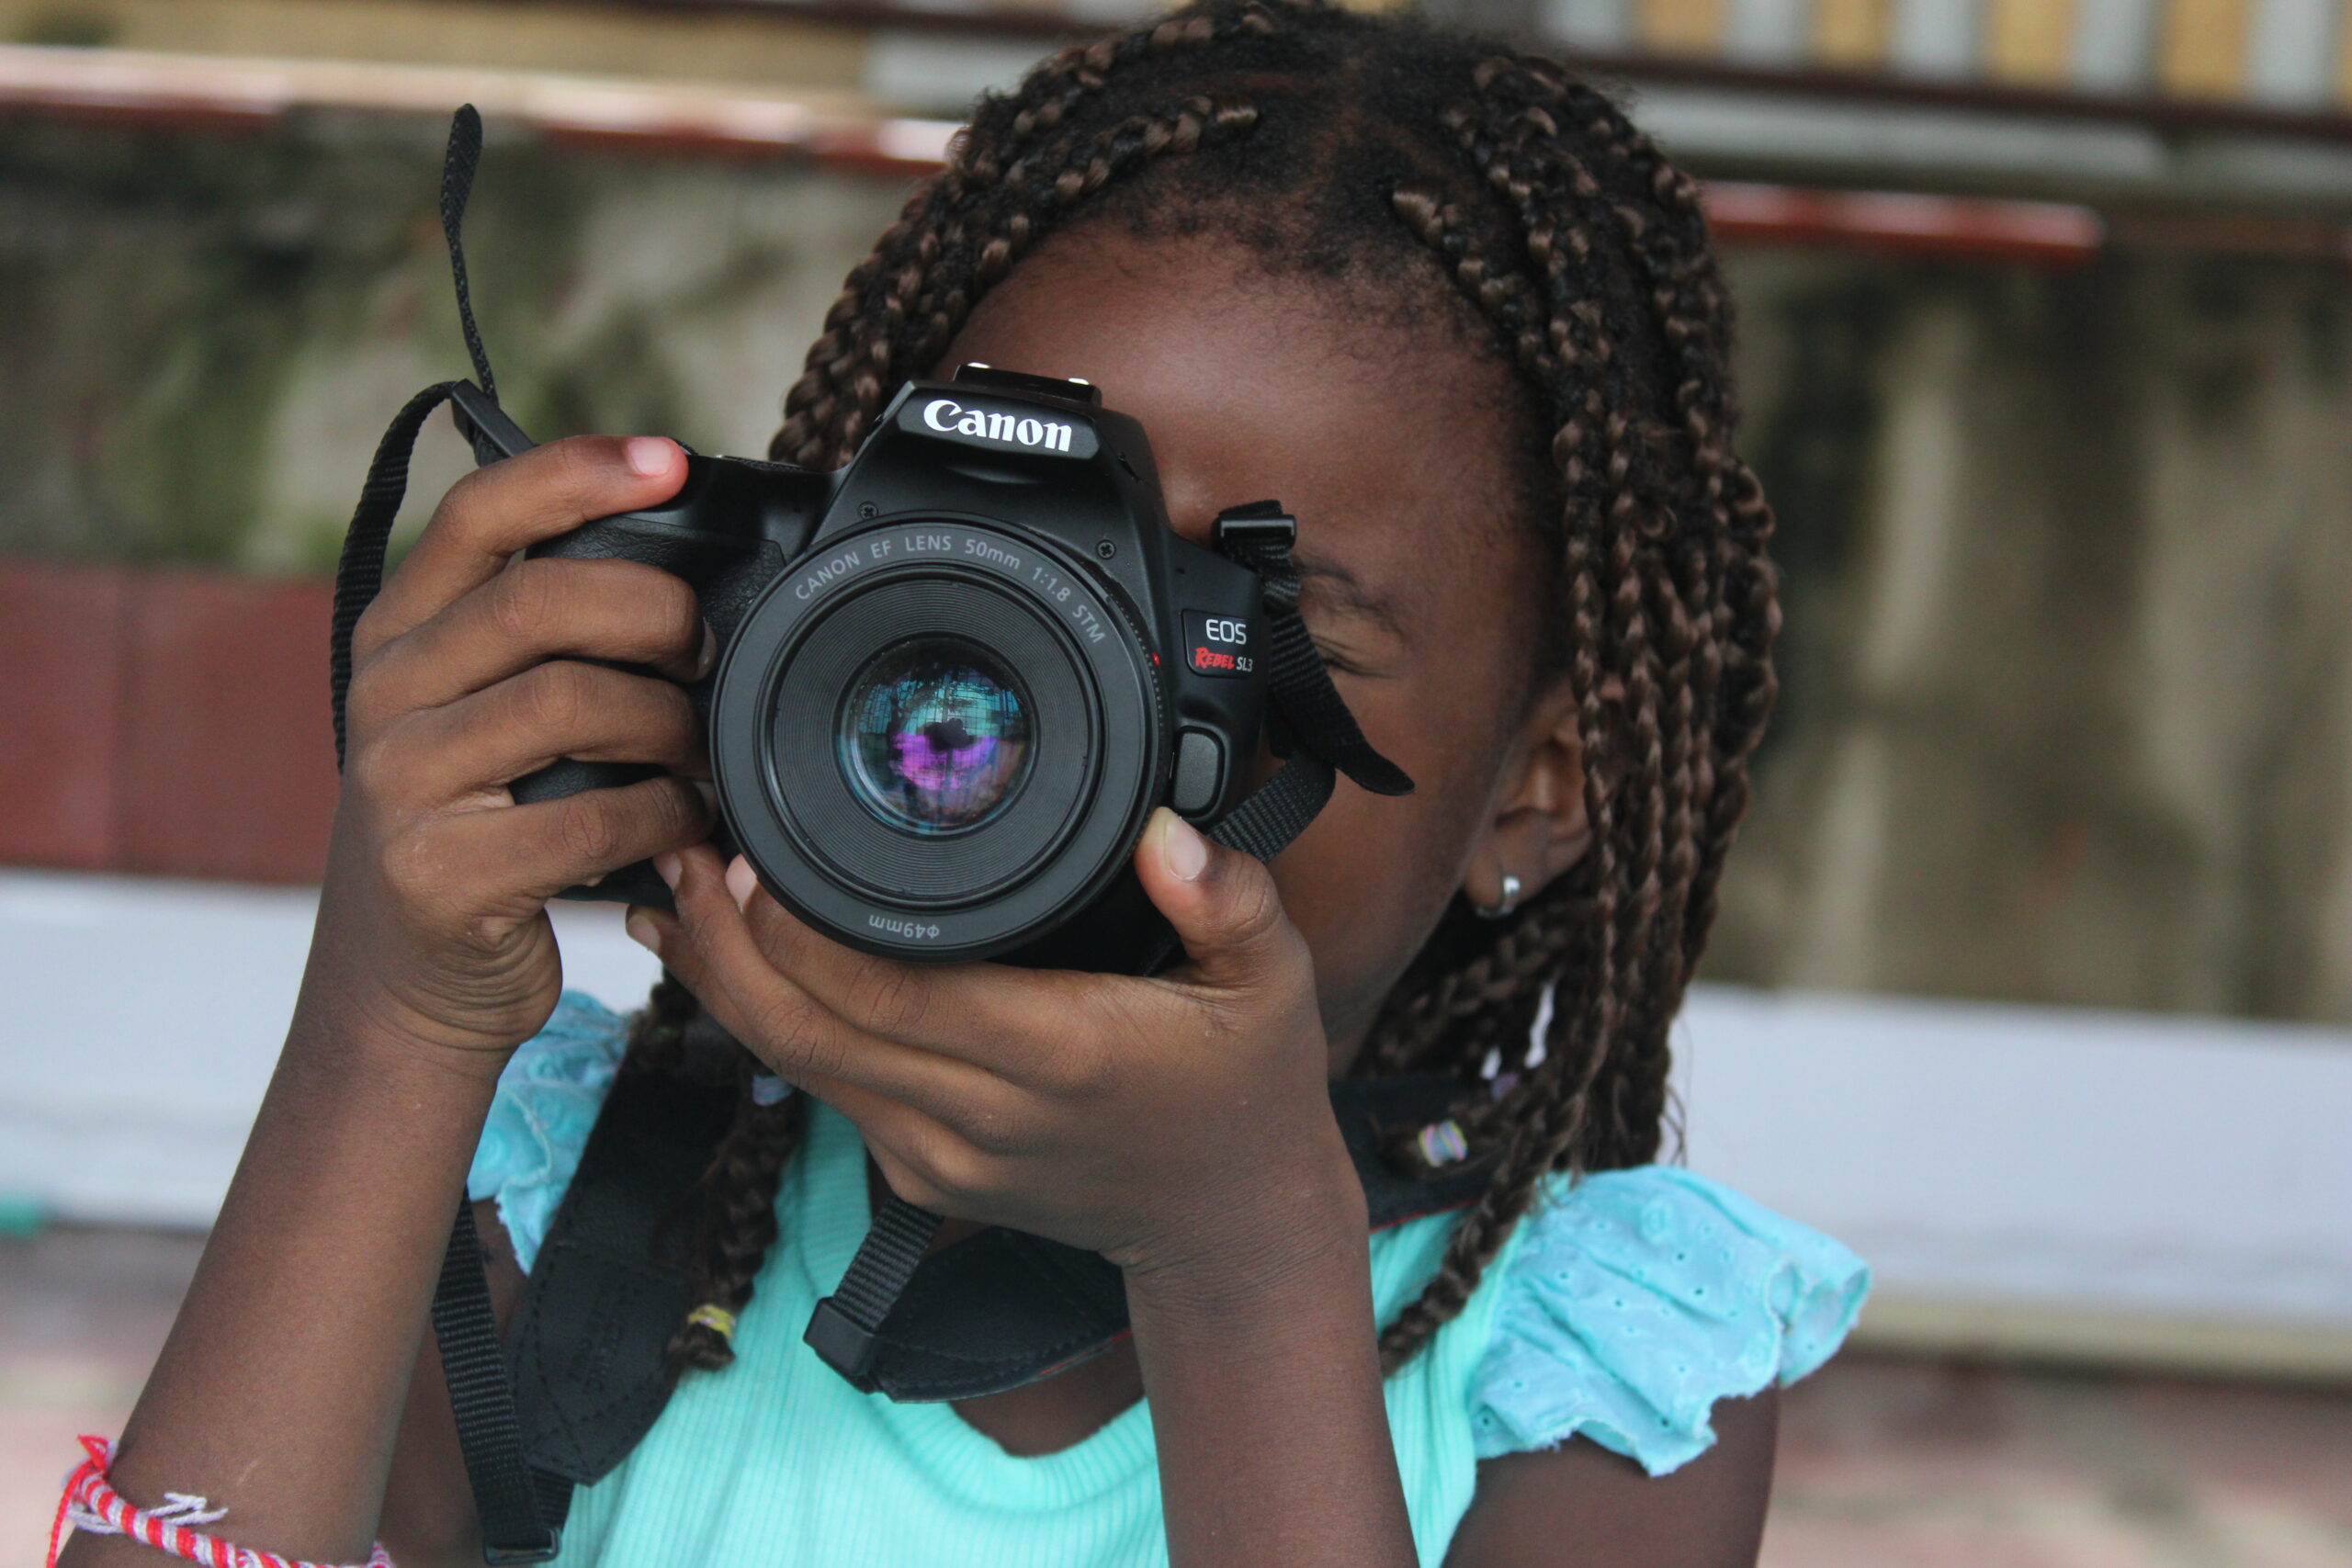 Taller de Fotografía “Soy Fotógrafo” Didáctica Lúdica, para el aprendizaje de la técnica fotográfica niña